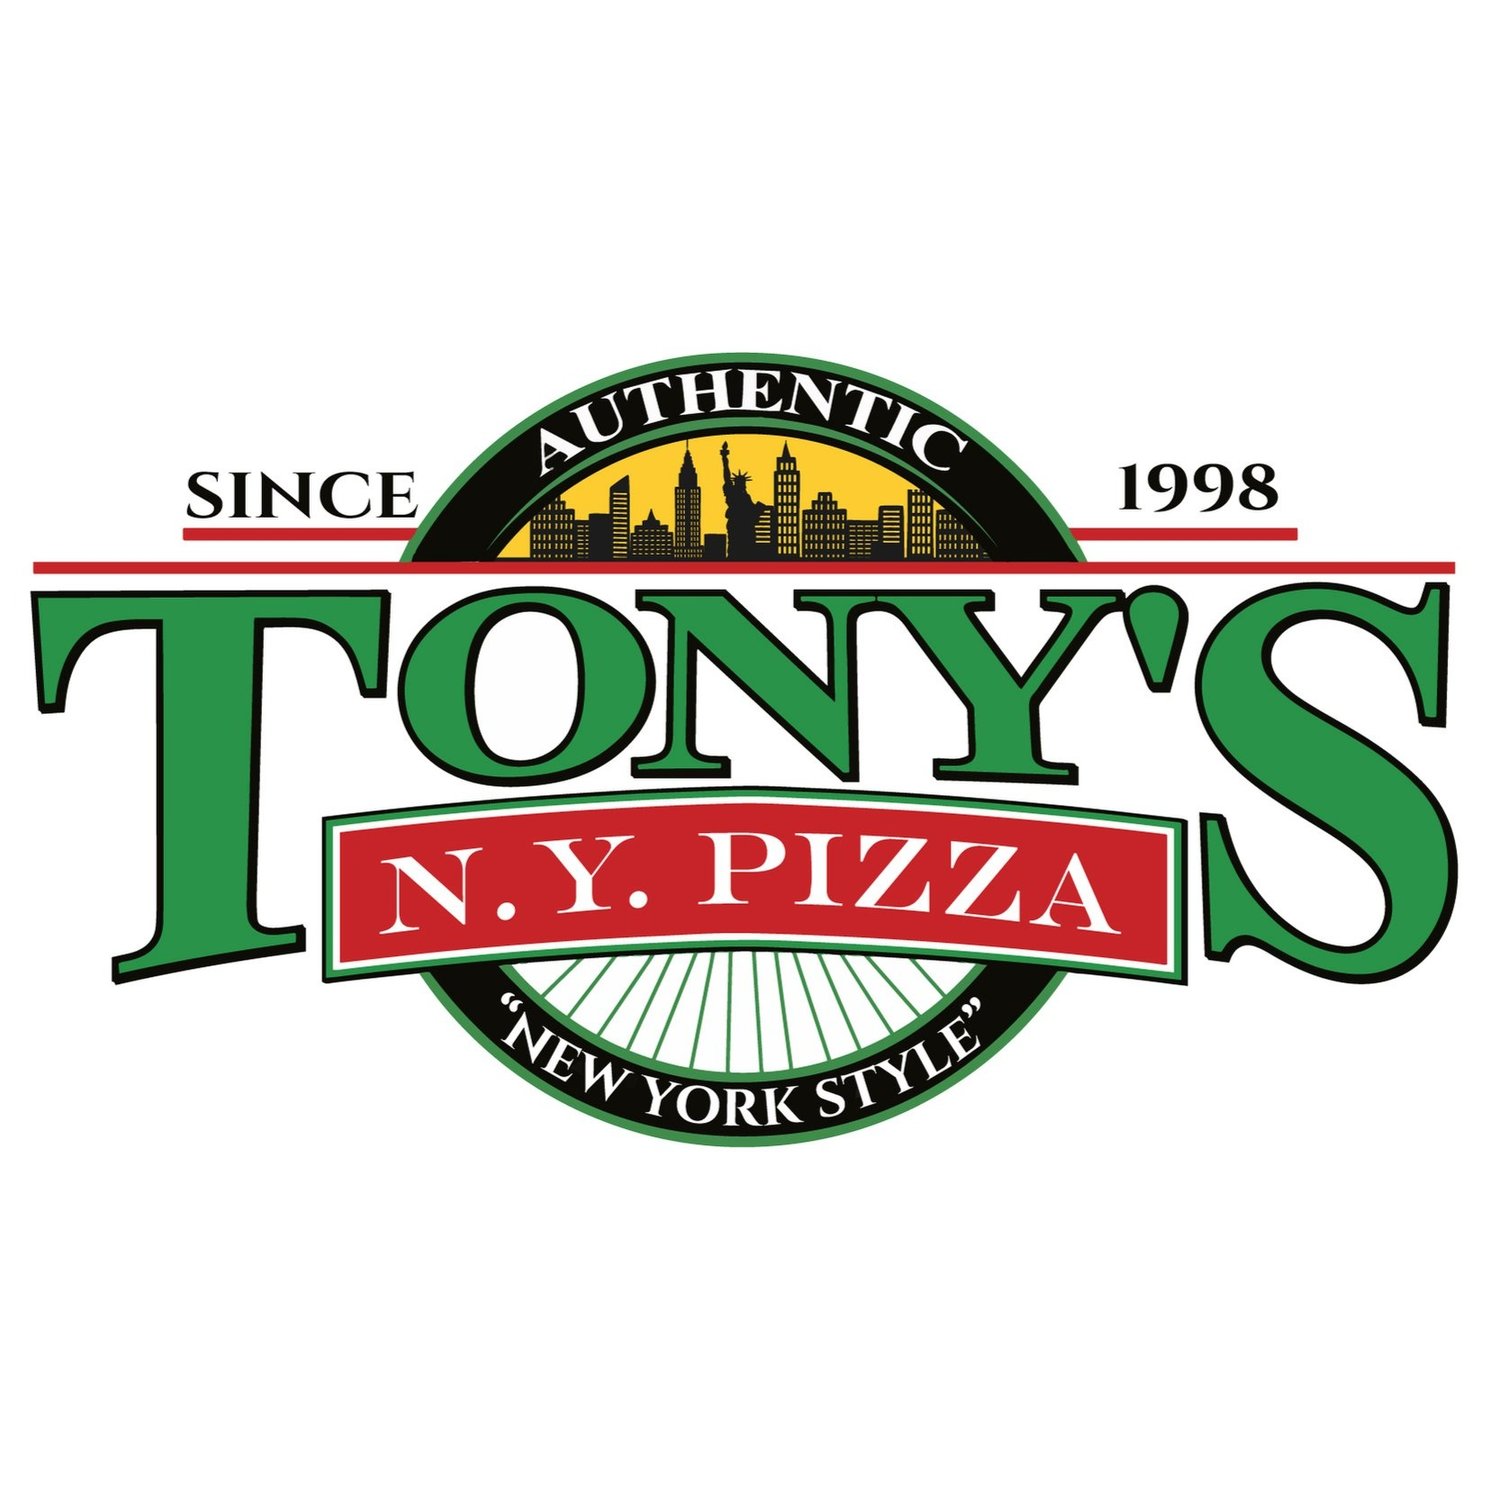 Tony's NY Pizza: Authentic New York Flavor